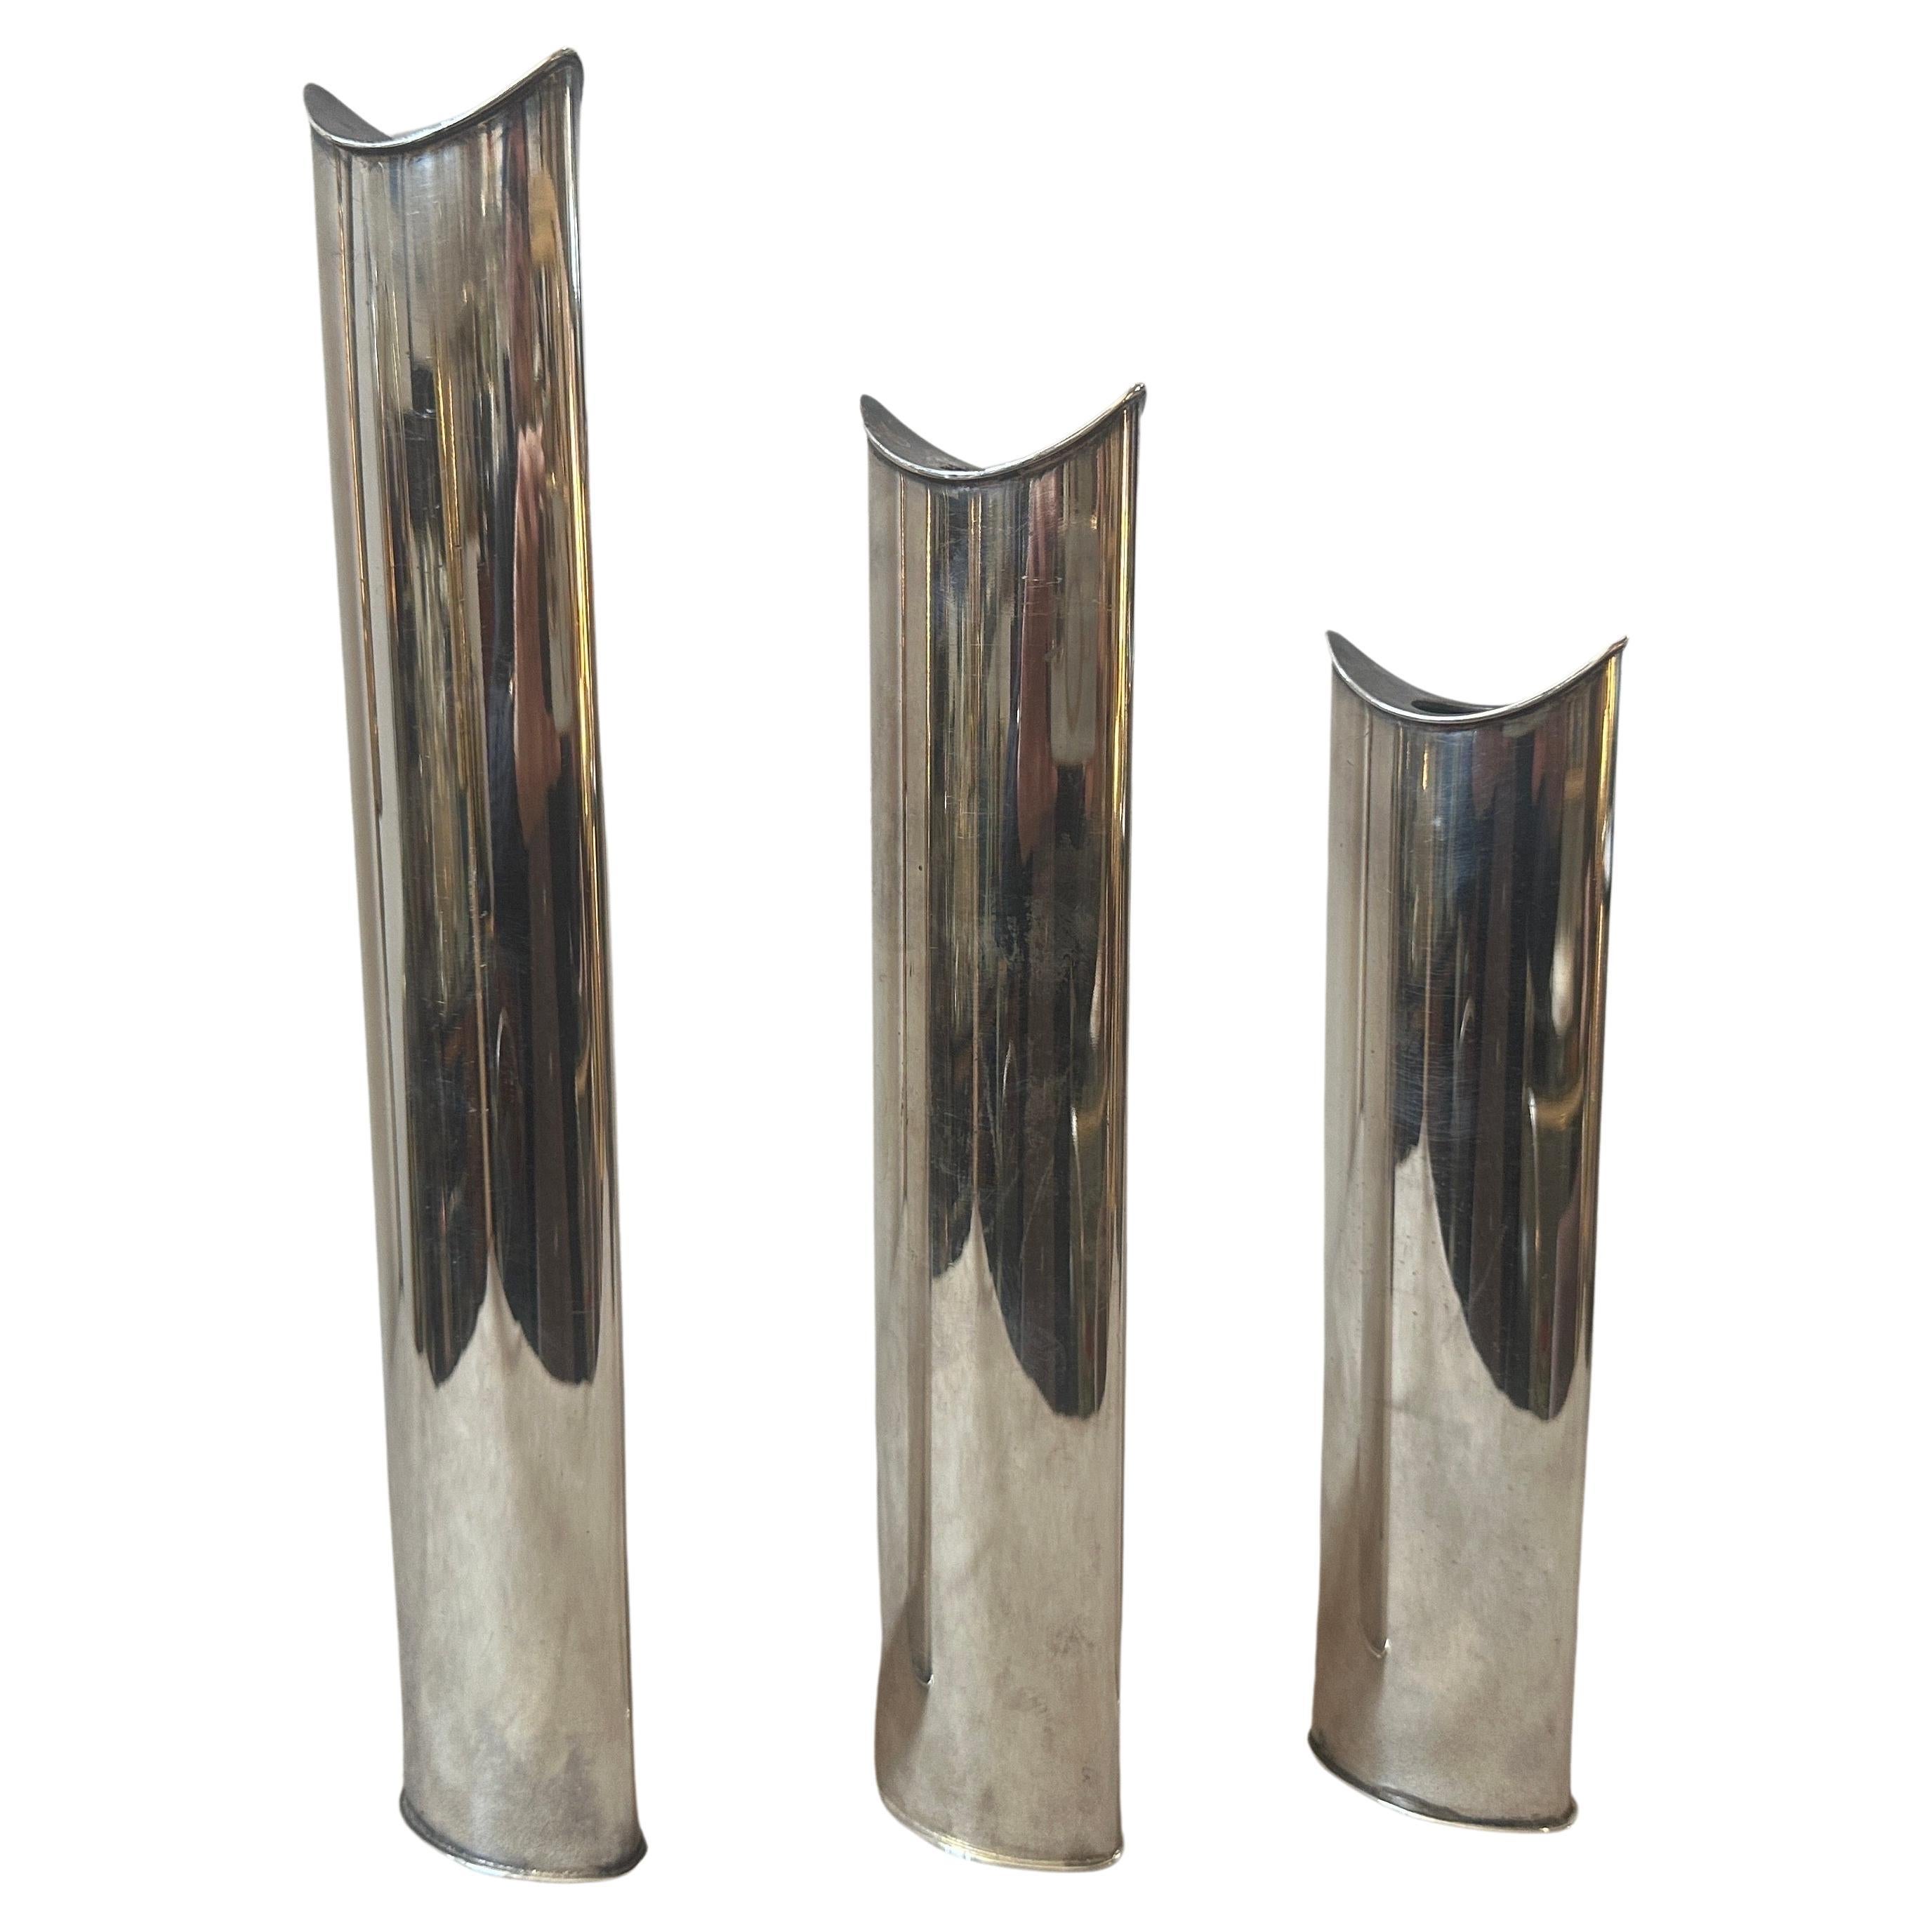 Drei ikonische versilberte Giselle-Vasen, die auch als Kerzenständer verwendet werden können, entworfen von Lino Sabattini und hergestellt von Sabattini Argenteria. Die Höhe der beiden anderen Vasen beträgt 26 cm und 21 cm. Sie befinden sich in